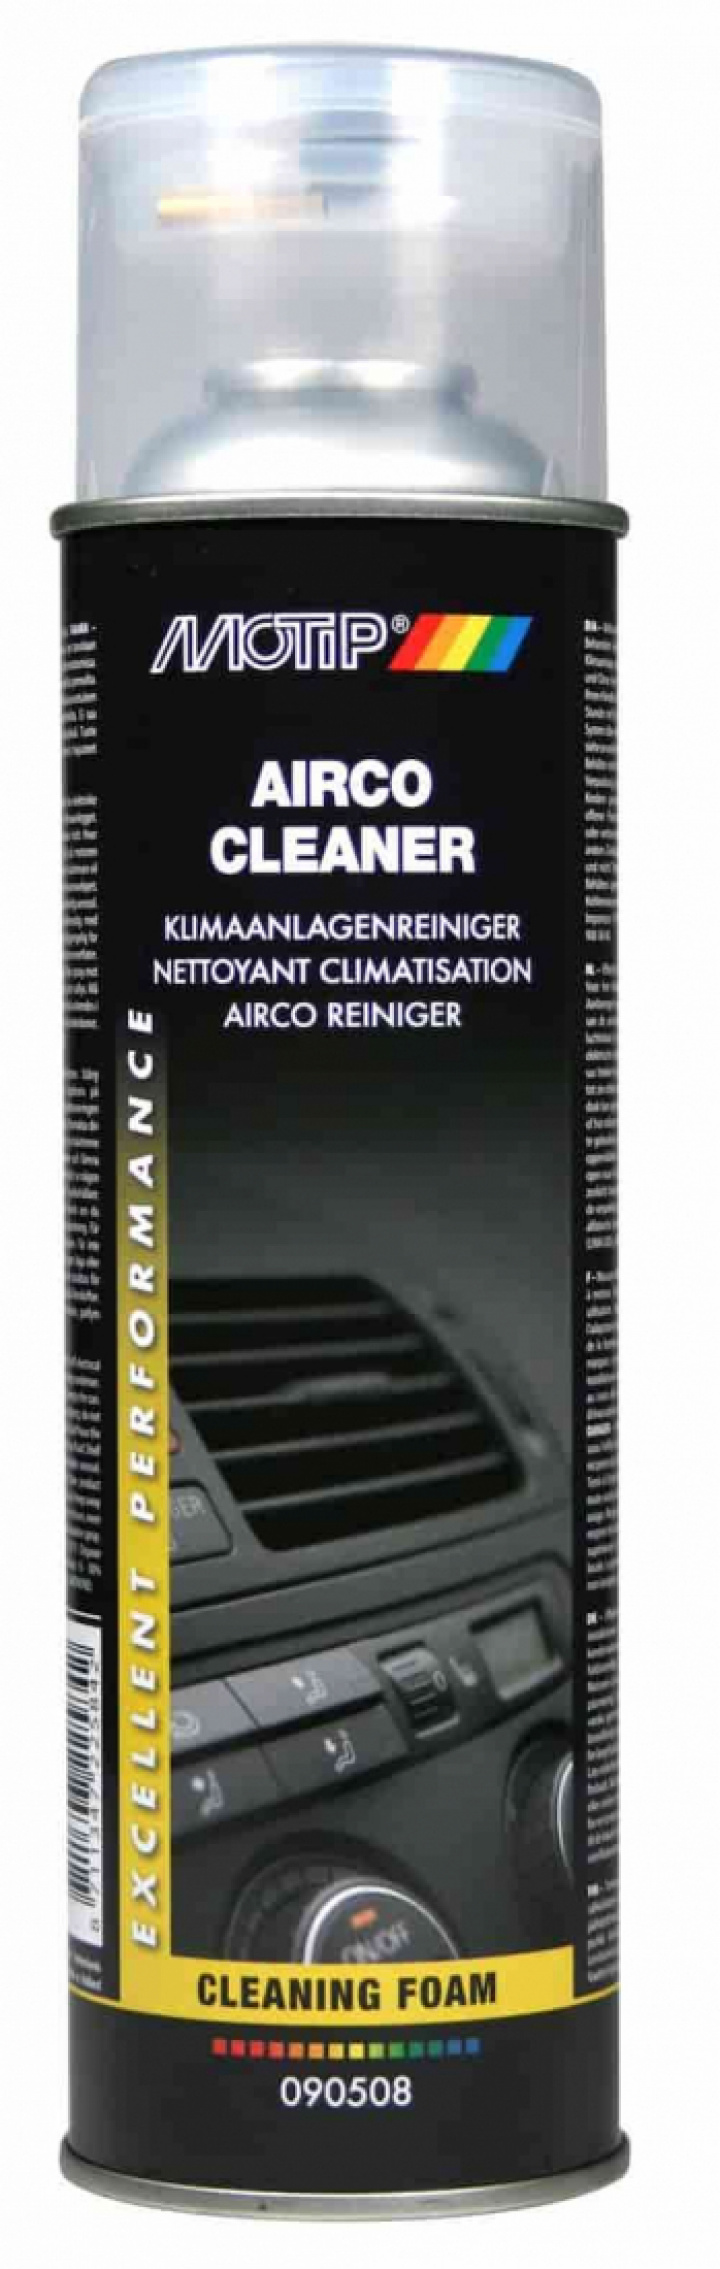 Airco Cleaner, rengöring för Ac i bilar och andra motorfordon